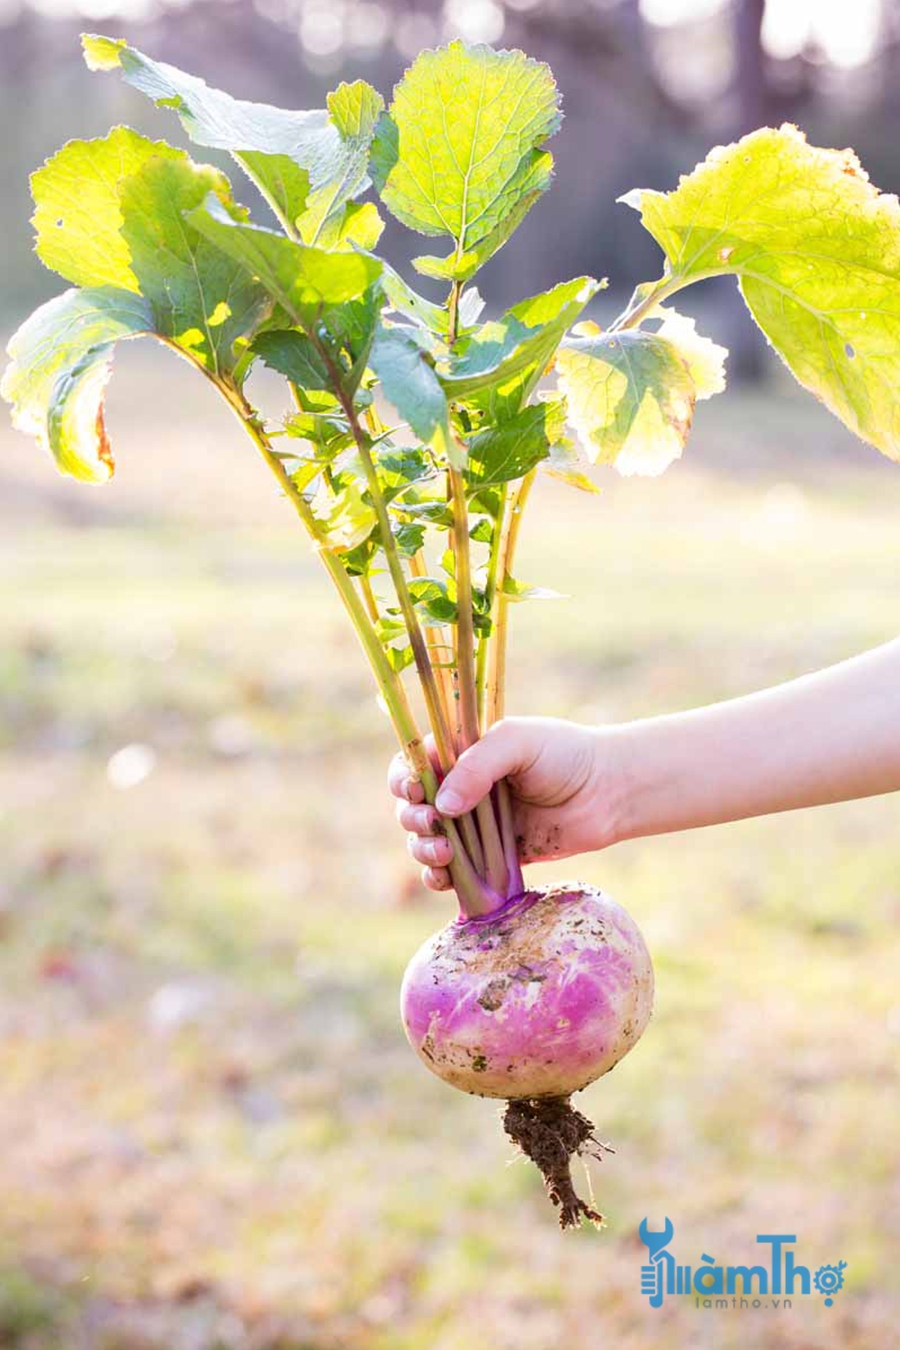 Sau 45 đến 60 ngày là có thể thu hoạch củ cải Turnip